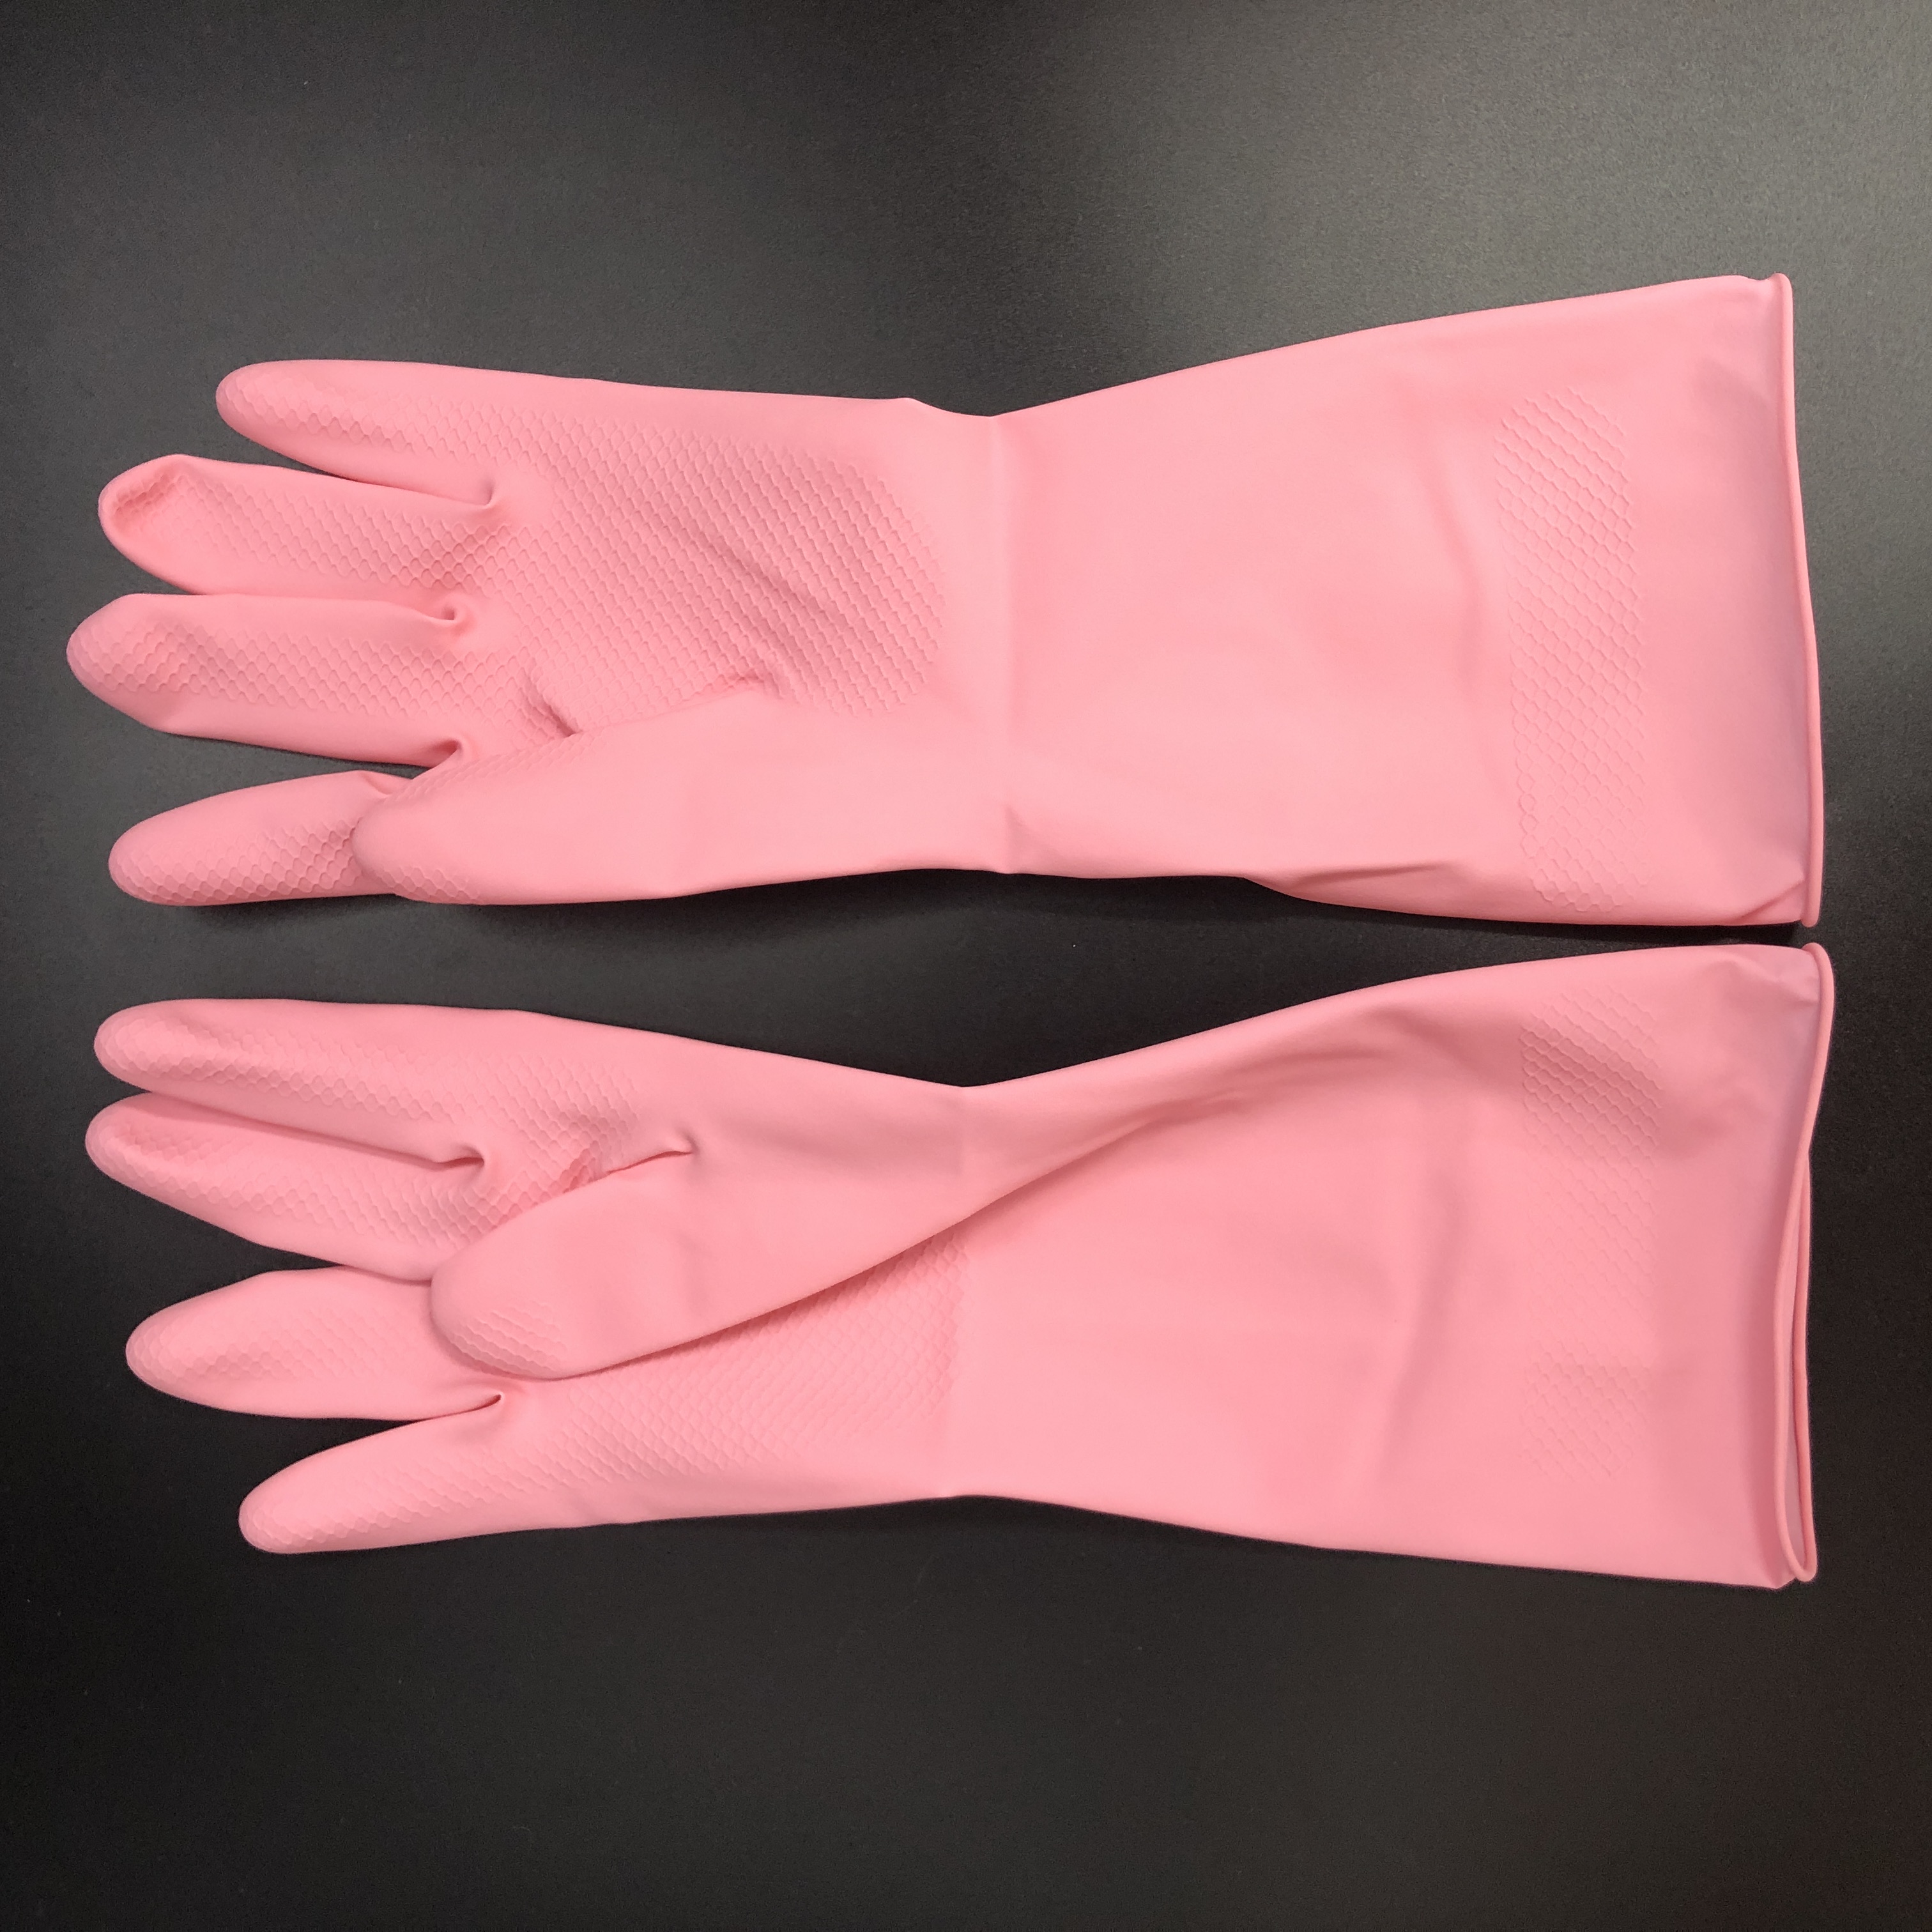 キッチン用品 :: ゴム手袋・ビニール手袋 :: 天然ゴム手袋 中厚手 ピンク S - 100均商品で経費削減|ぱちぱち通販